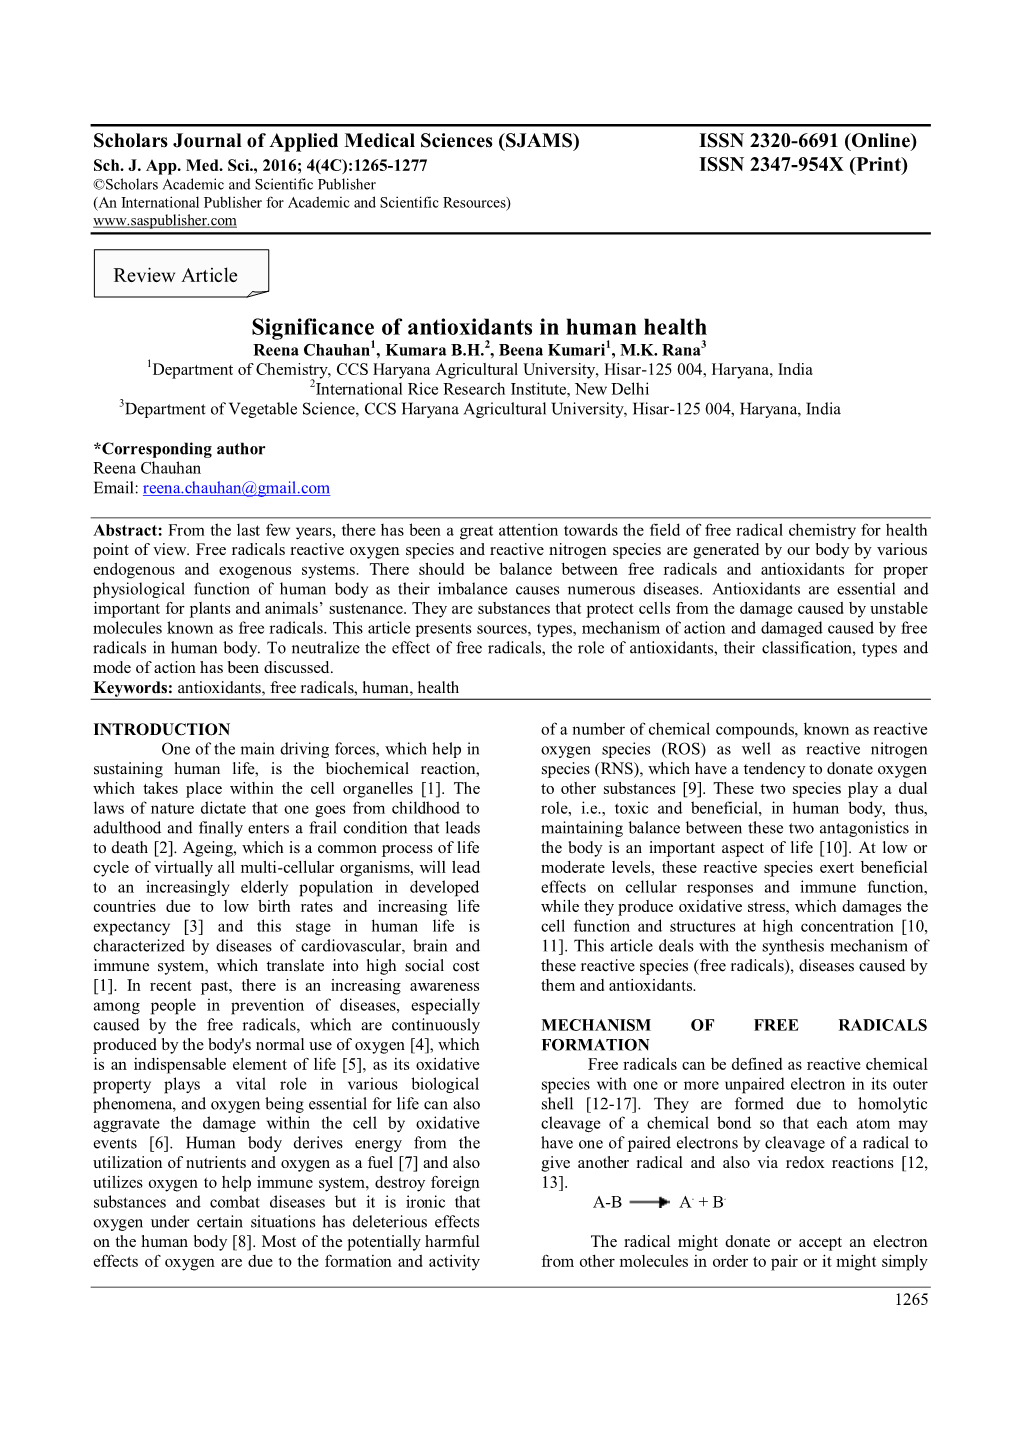 Significance of Antioxidants in Human Health Reena Chauhan1, Kumara B.H.2, Beena Kumari1, M.K